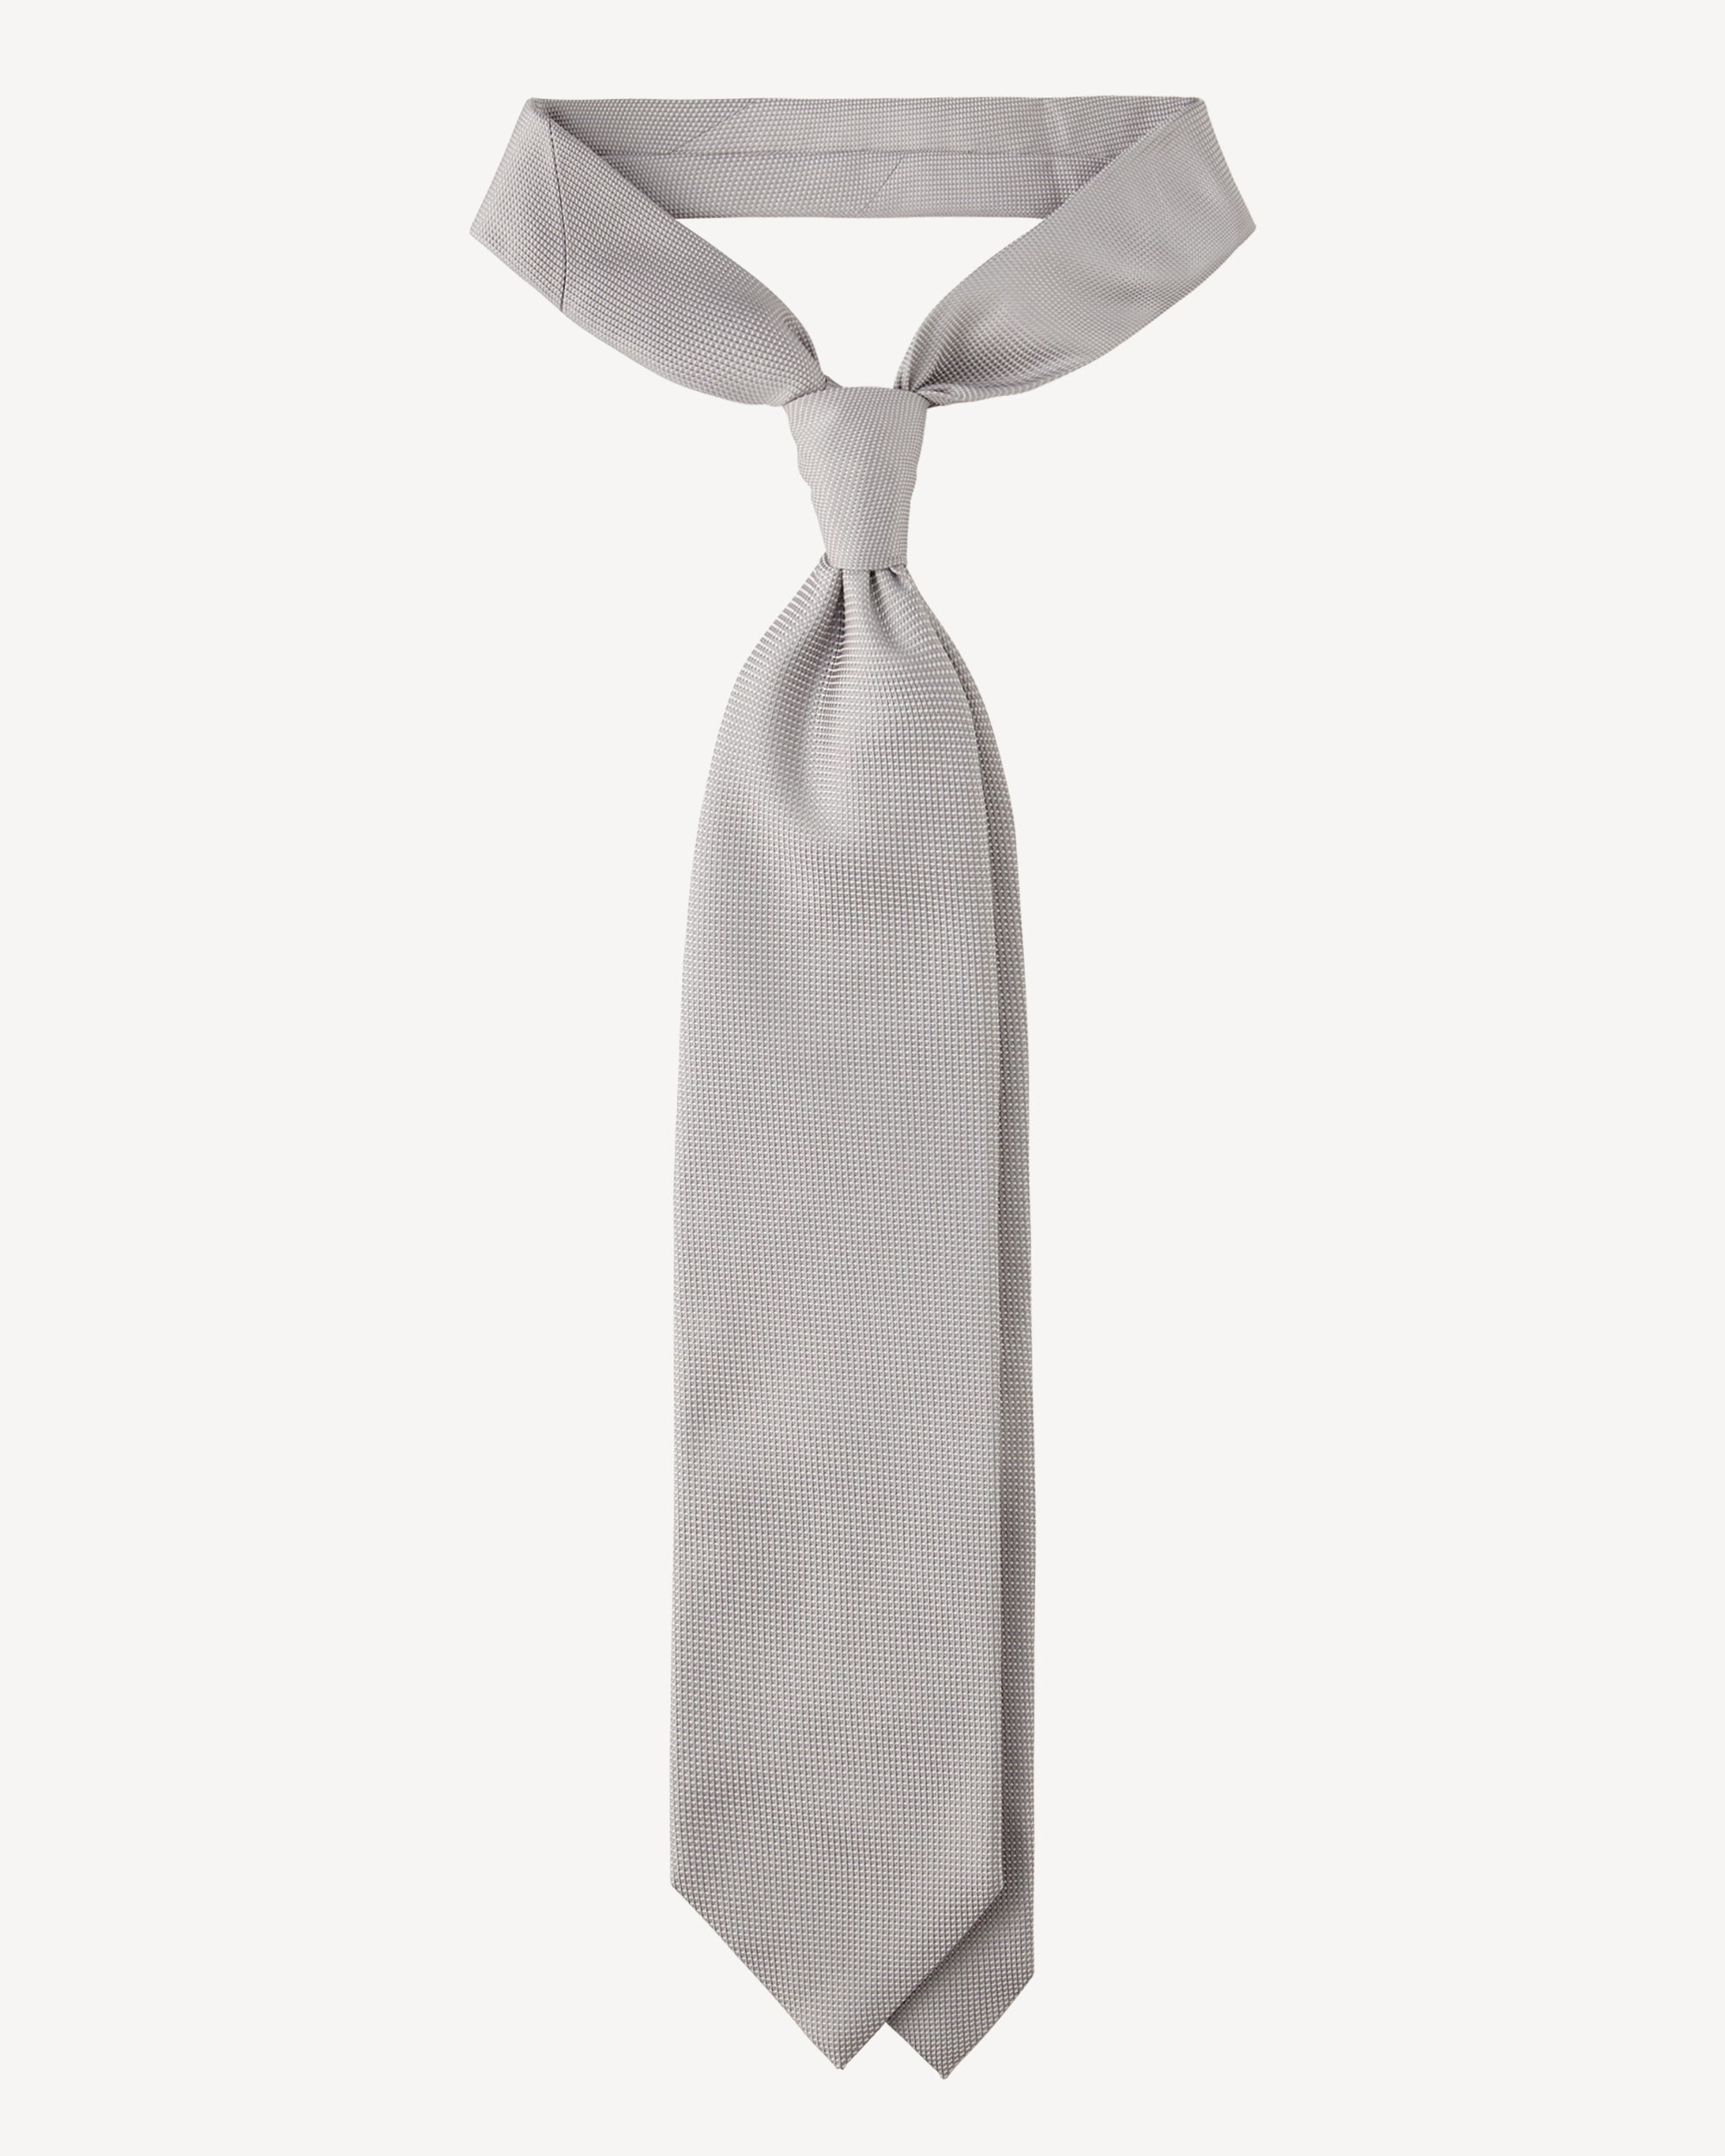 Krawatte in silber